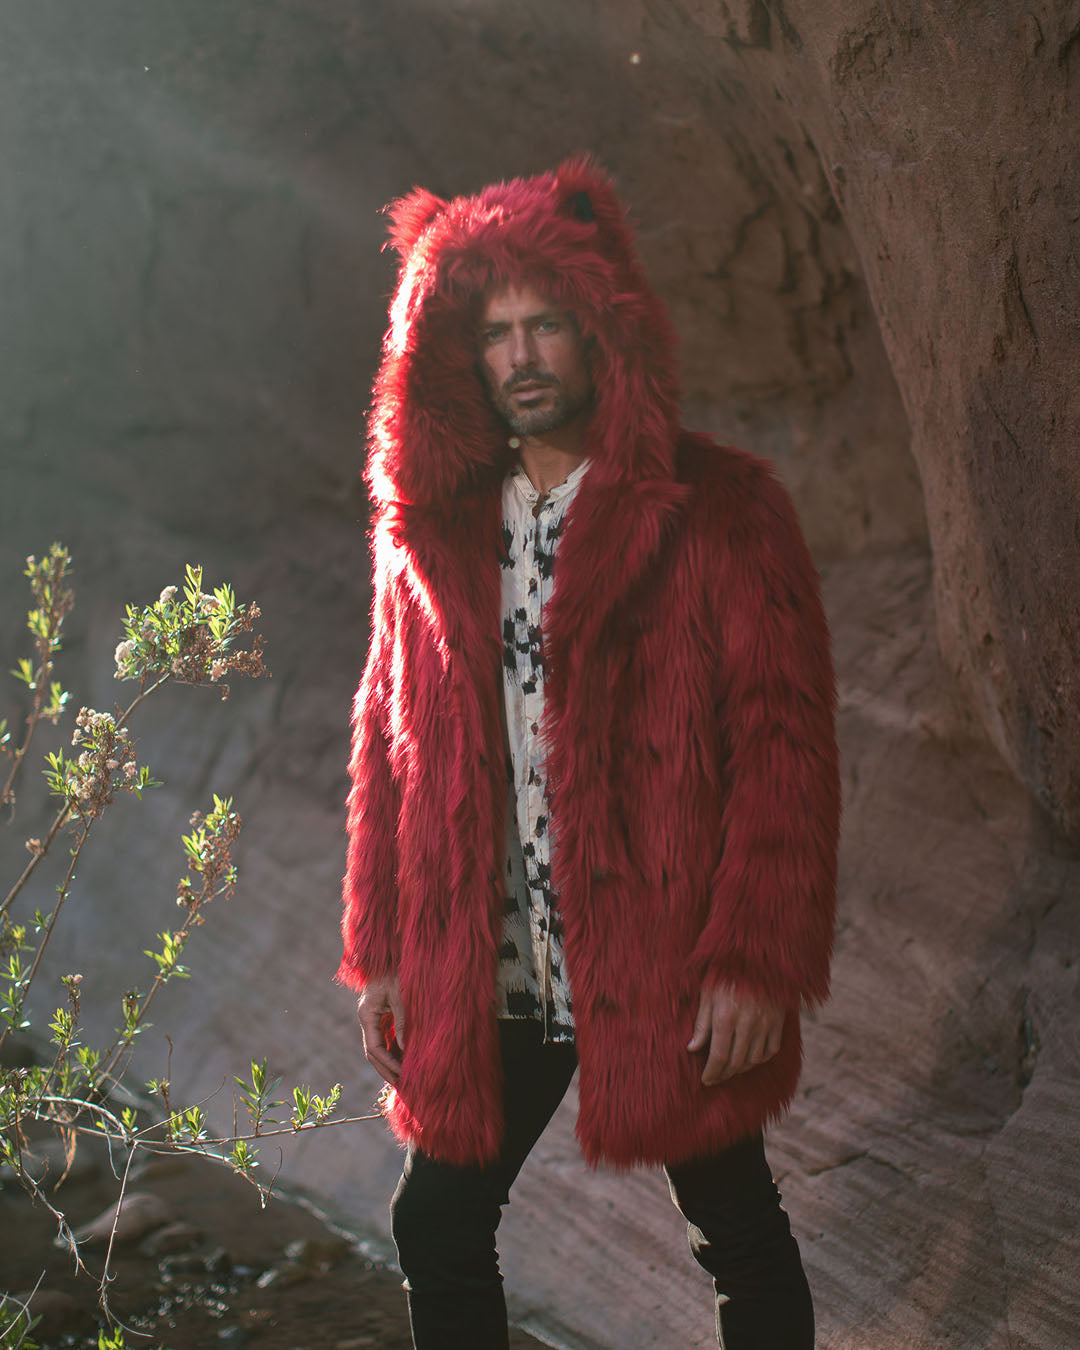 Men's Wolf Hooded Faux Fur Coat